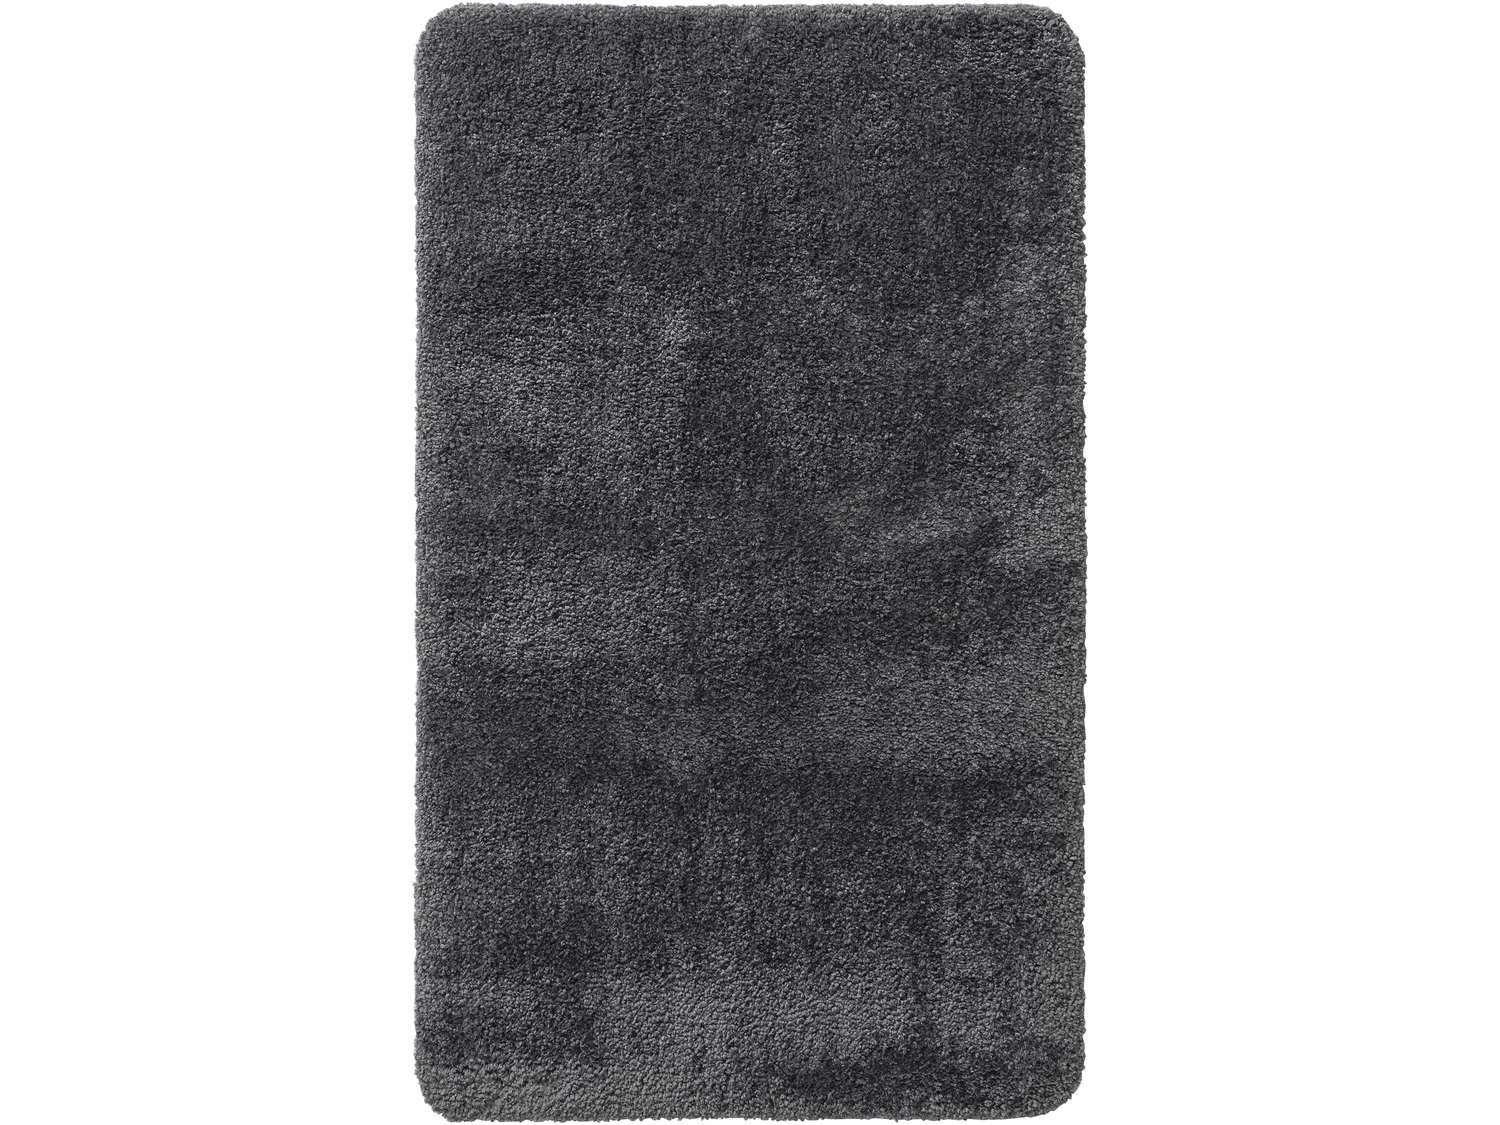 Zestaw dywaników łazienkowych Miomare, cena 39,99 PLN 
- możliwość prania ...